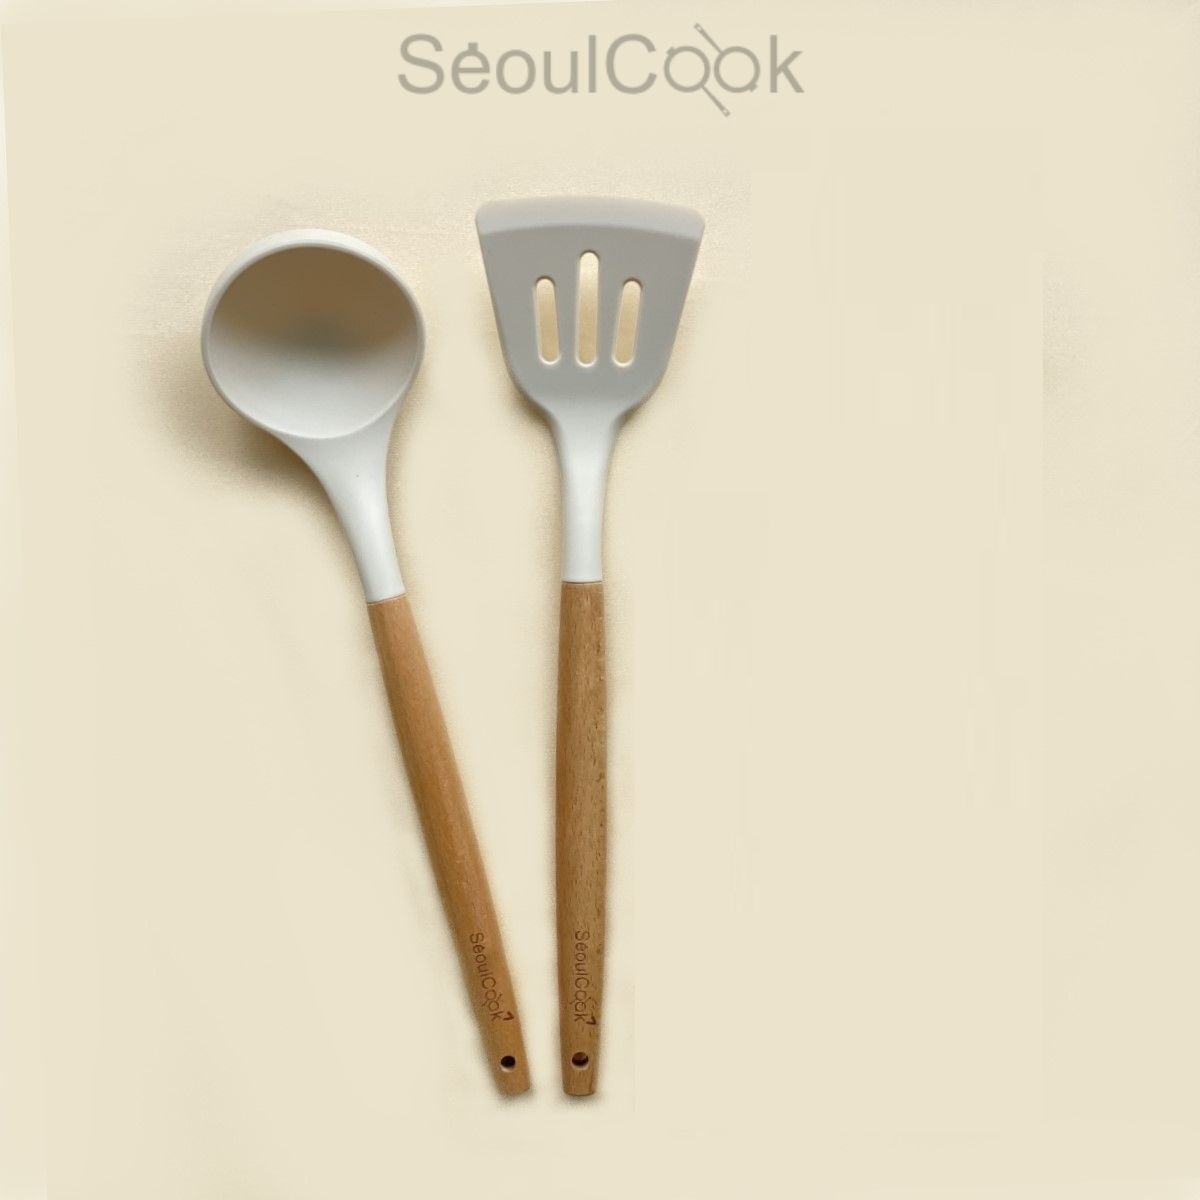  Bộ 2 dụng cụ nấu ăn Vá/ Sạn/Xẻng có rãnh cán gỗ Seoulcook cao cấp, chống dính dùng cho nhà bếp 